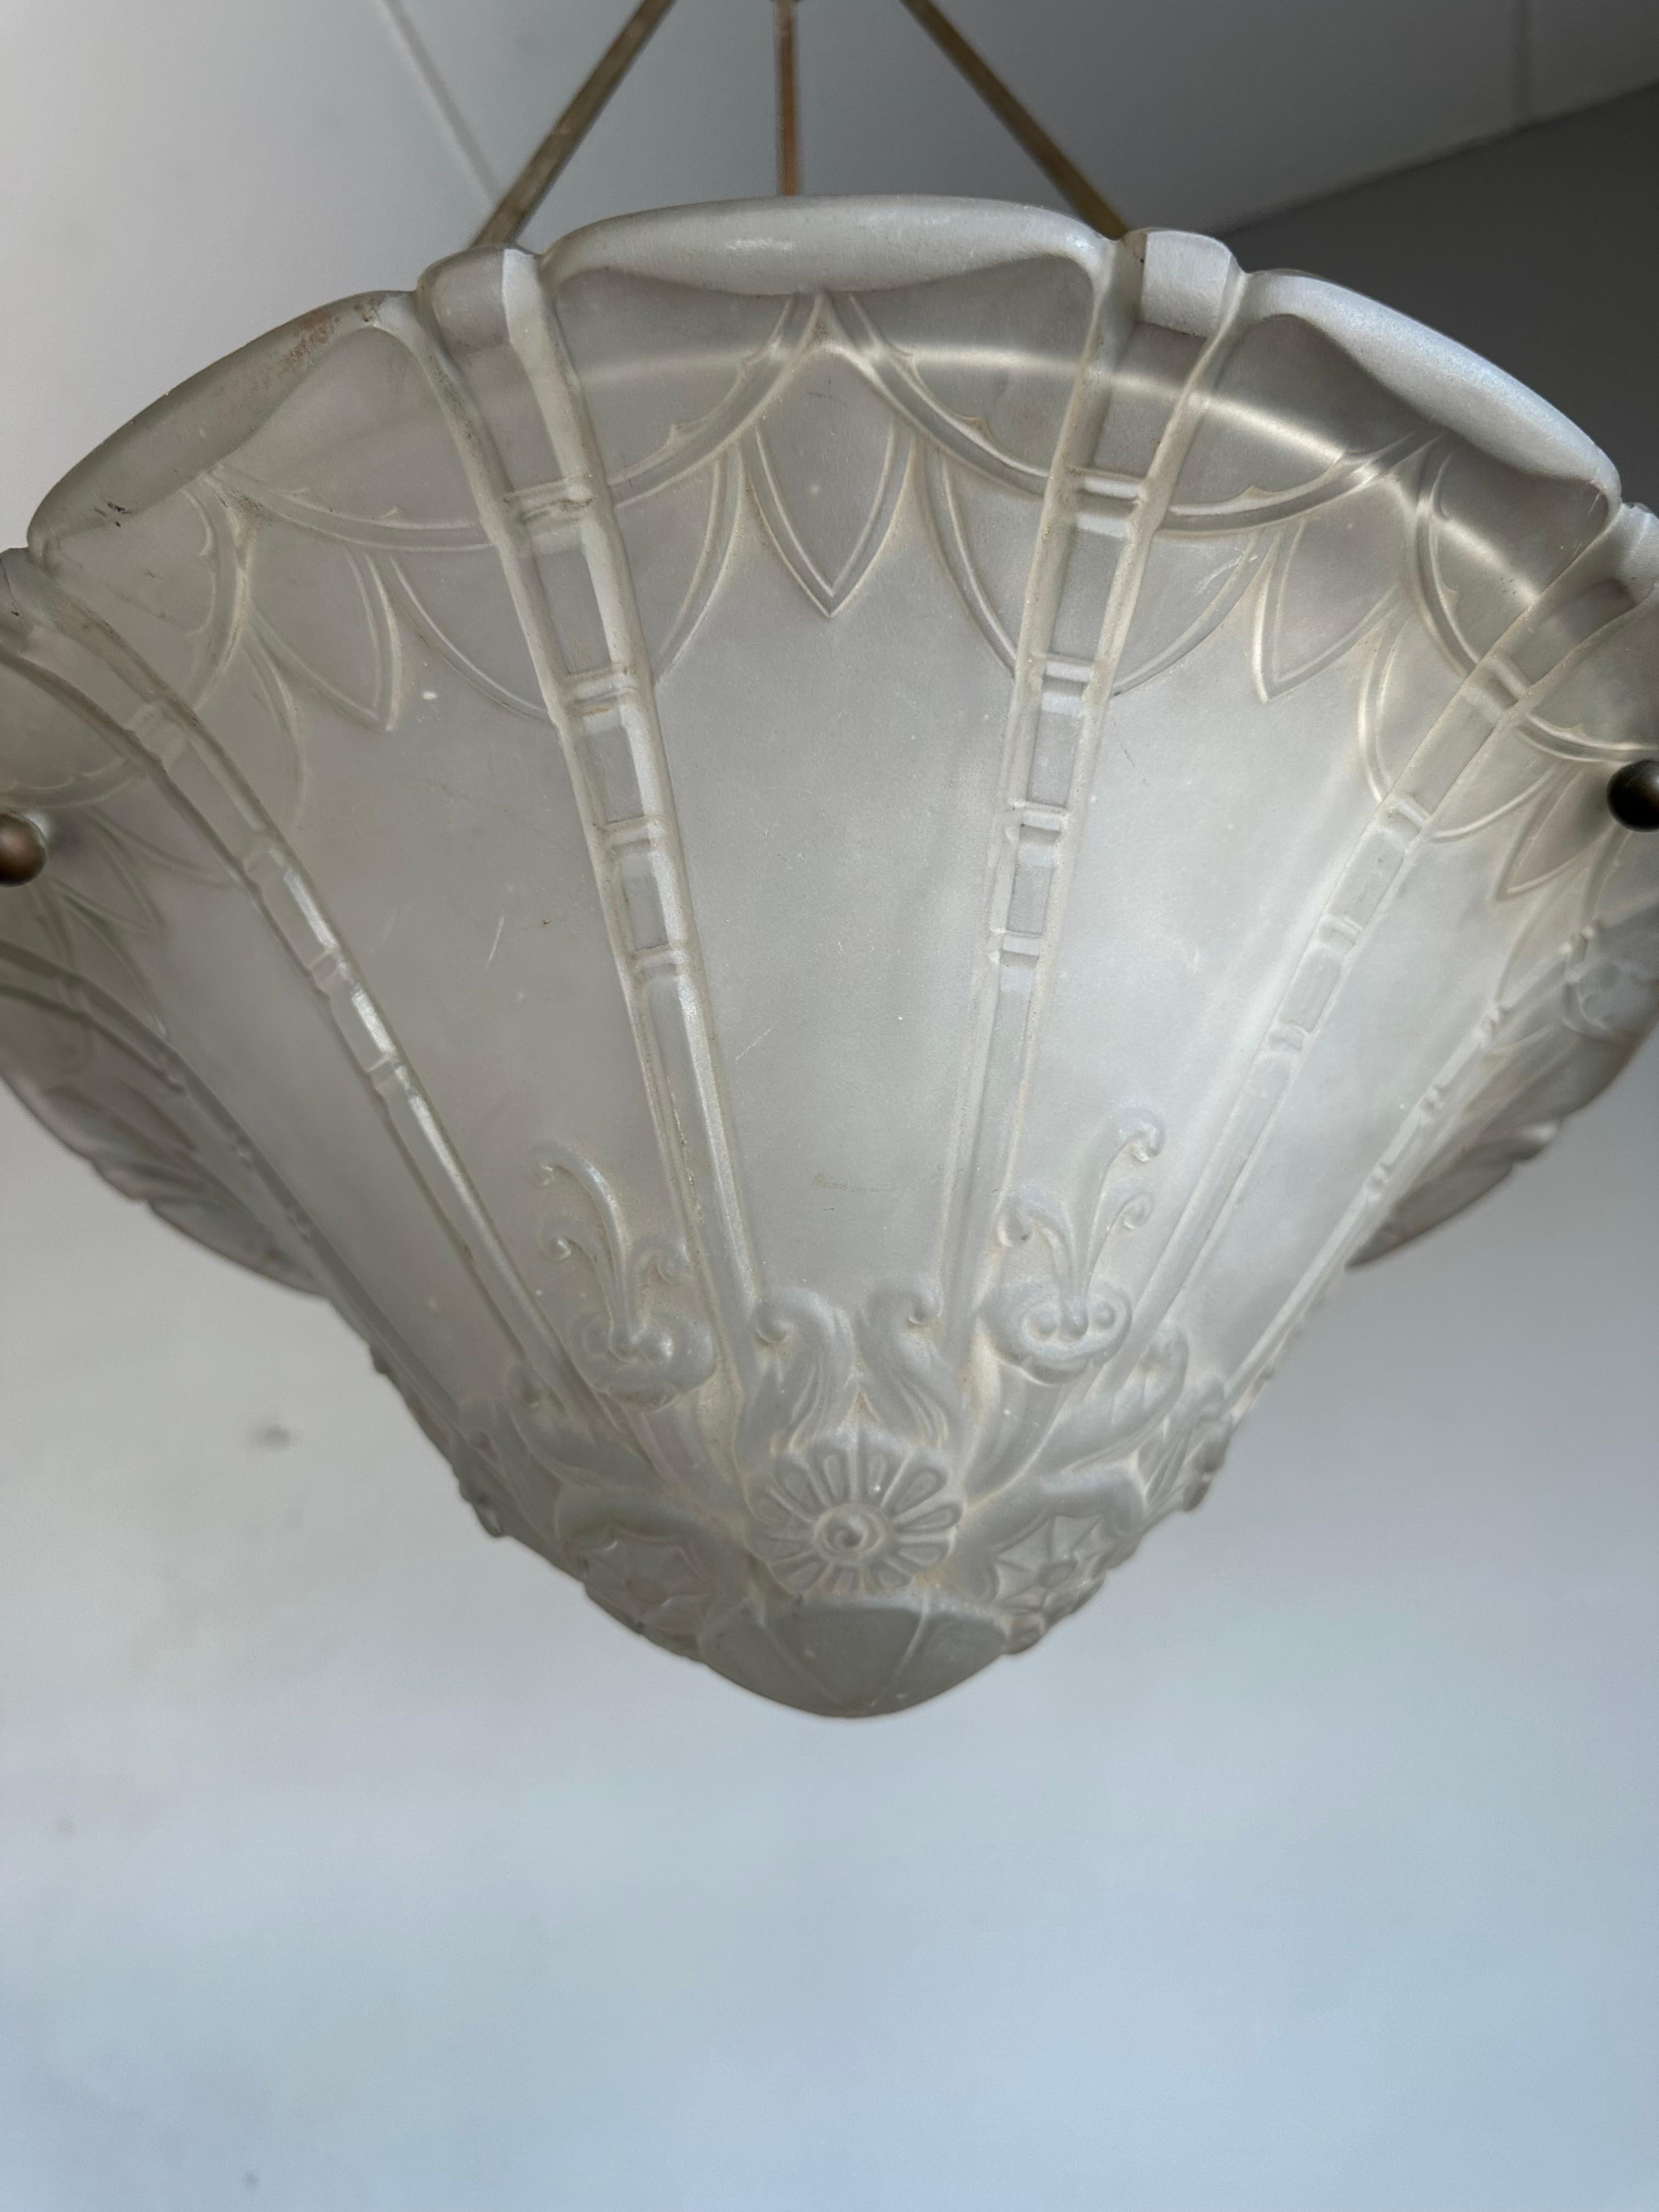 Une autre lampe suspendue ancienne de l'Arte Antiques déco, de qualité supérieure, qui fait sensation.

Ce lustre Art déco de Pierre D'Avesn a été entièrement réalisé à la main dans le studio de Daum (Croismare, Nancy) au début des années 1930. Ce